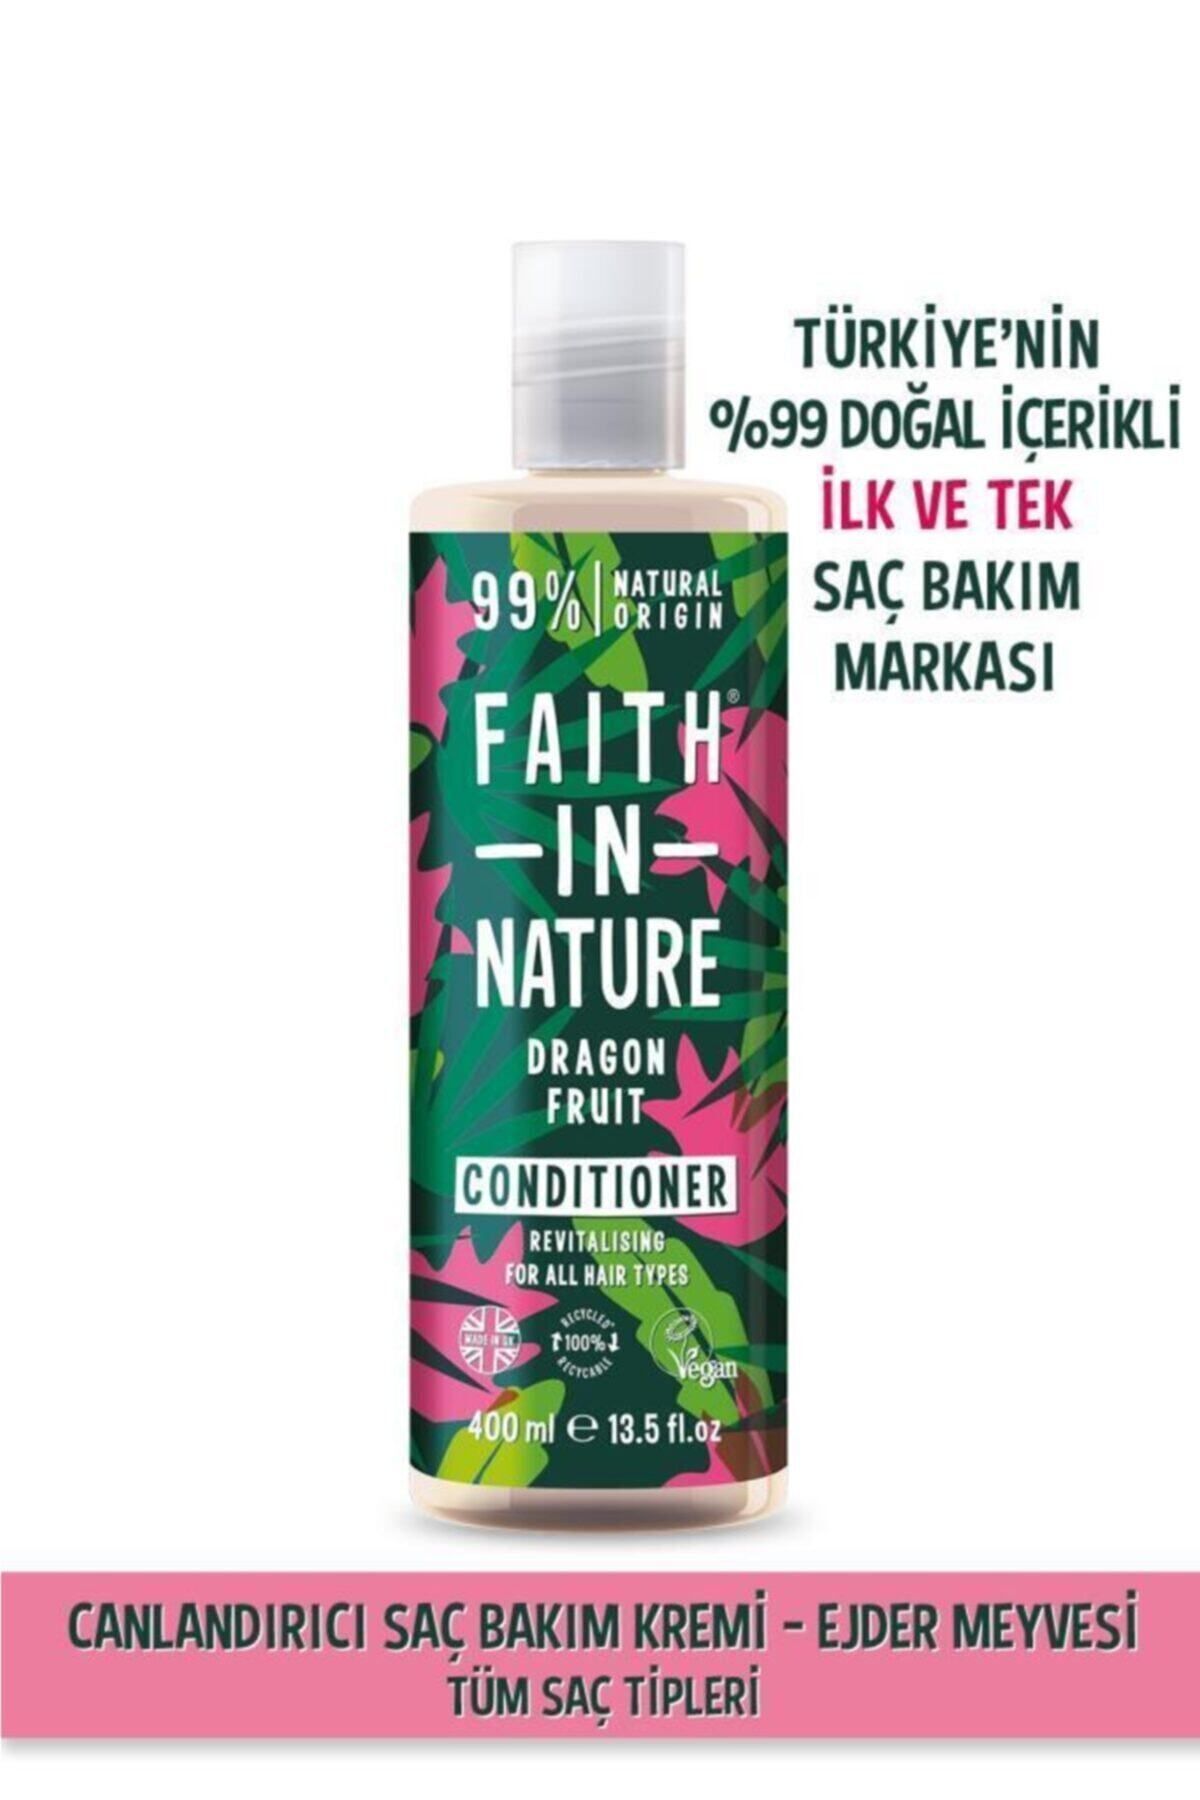 Faith In Nature %99 Doğal Canlandırıcı Saç Bakım Kremi Ejder Meyvesi Tüm Saç Tipleri İçin